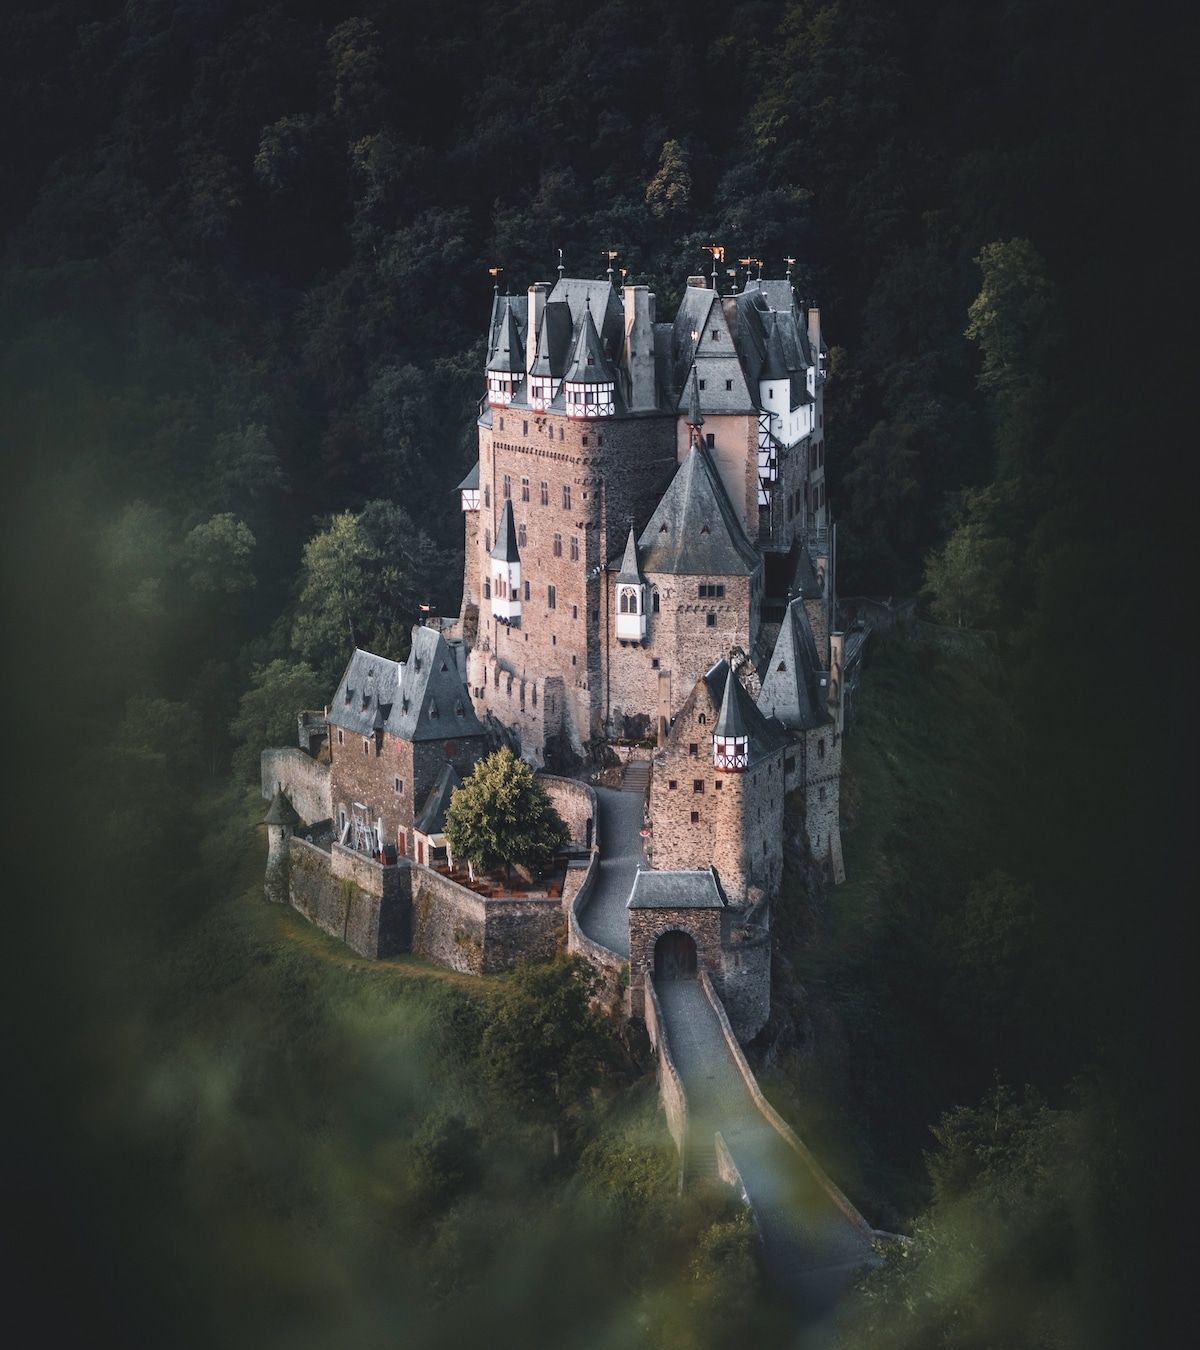 " by @moodfella另一座城堡,同样来自德国的埃尔茨城堡.